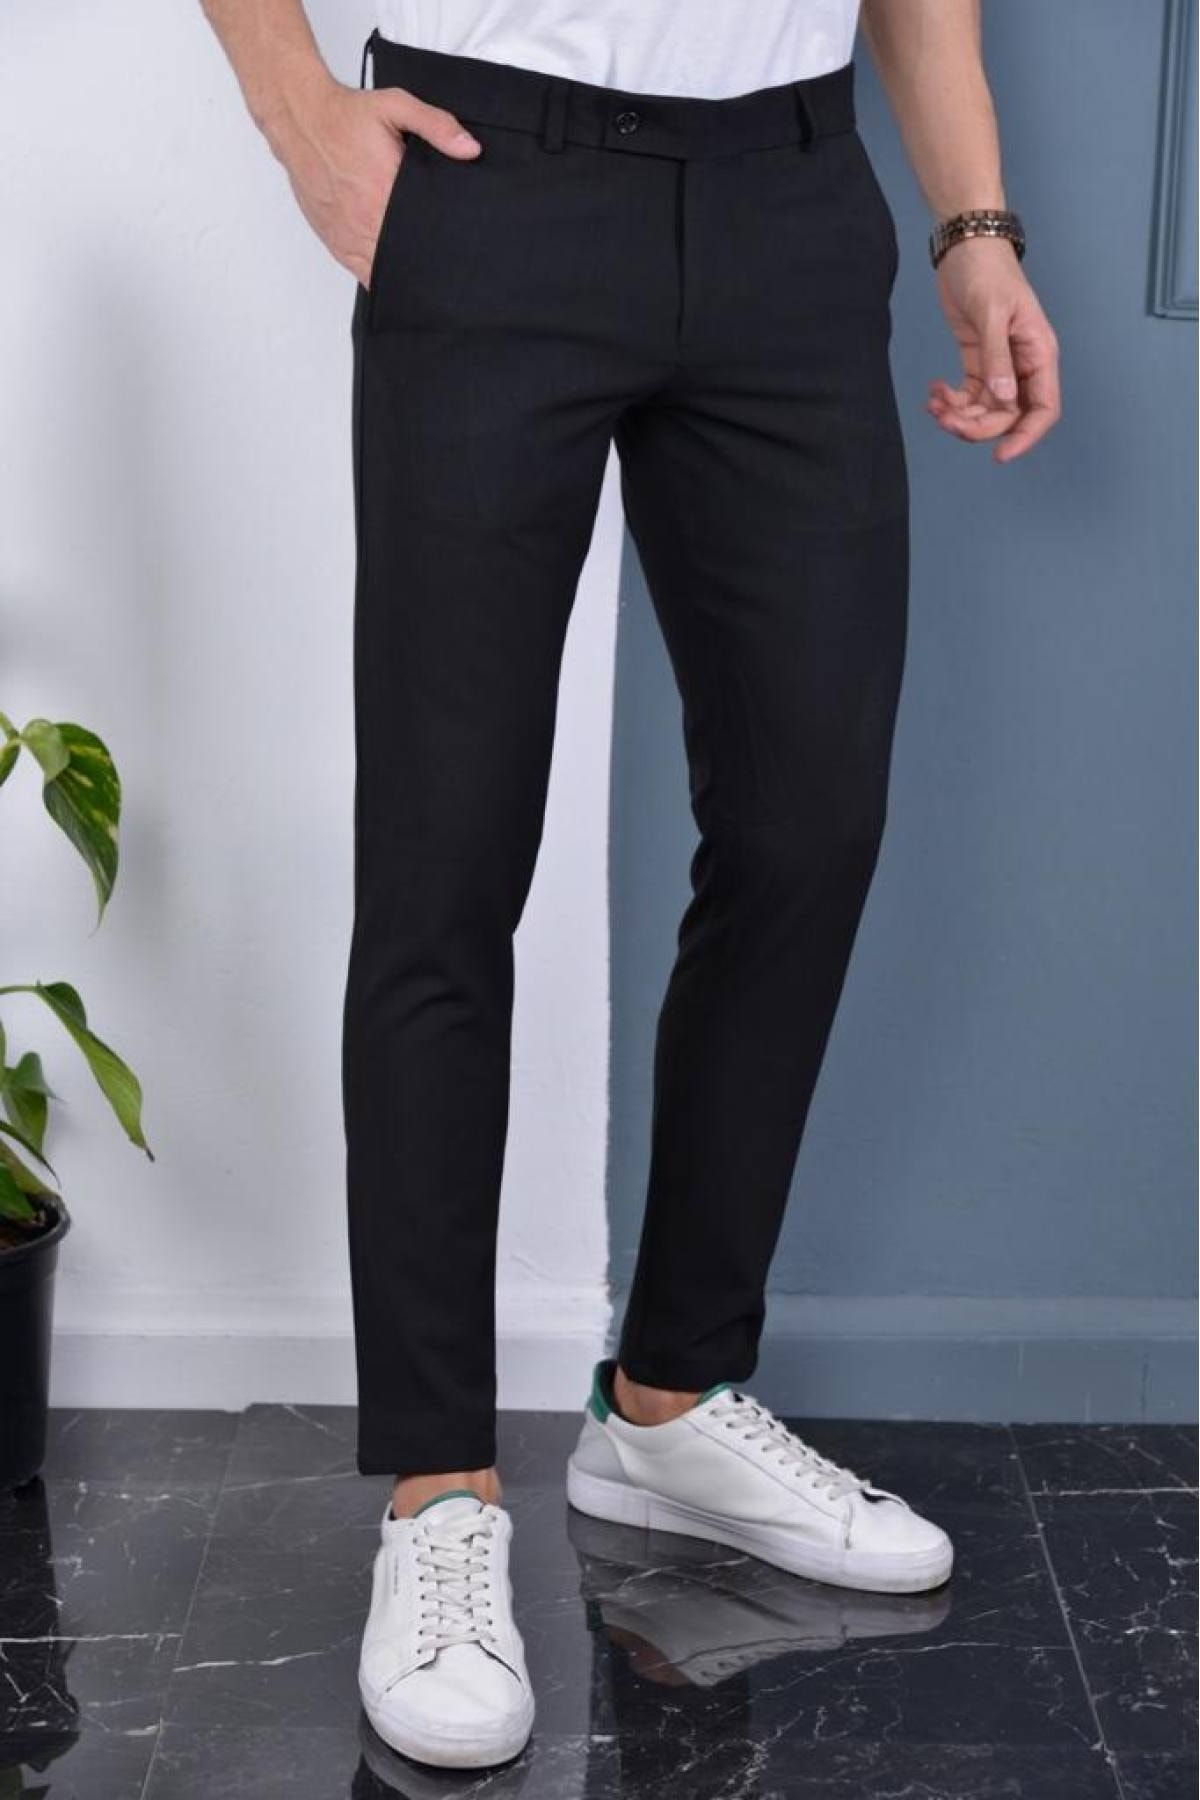 Gavazzi Erkek Siyah Renk Italyan Kesim Kaliteli Esnek Likralı Bilek Boy Kumaş Pantolon